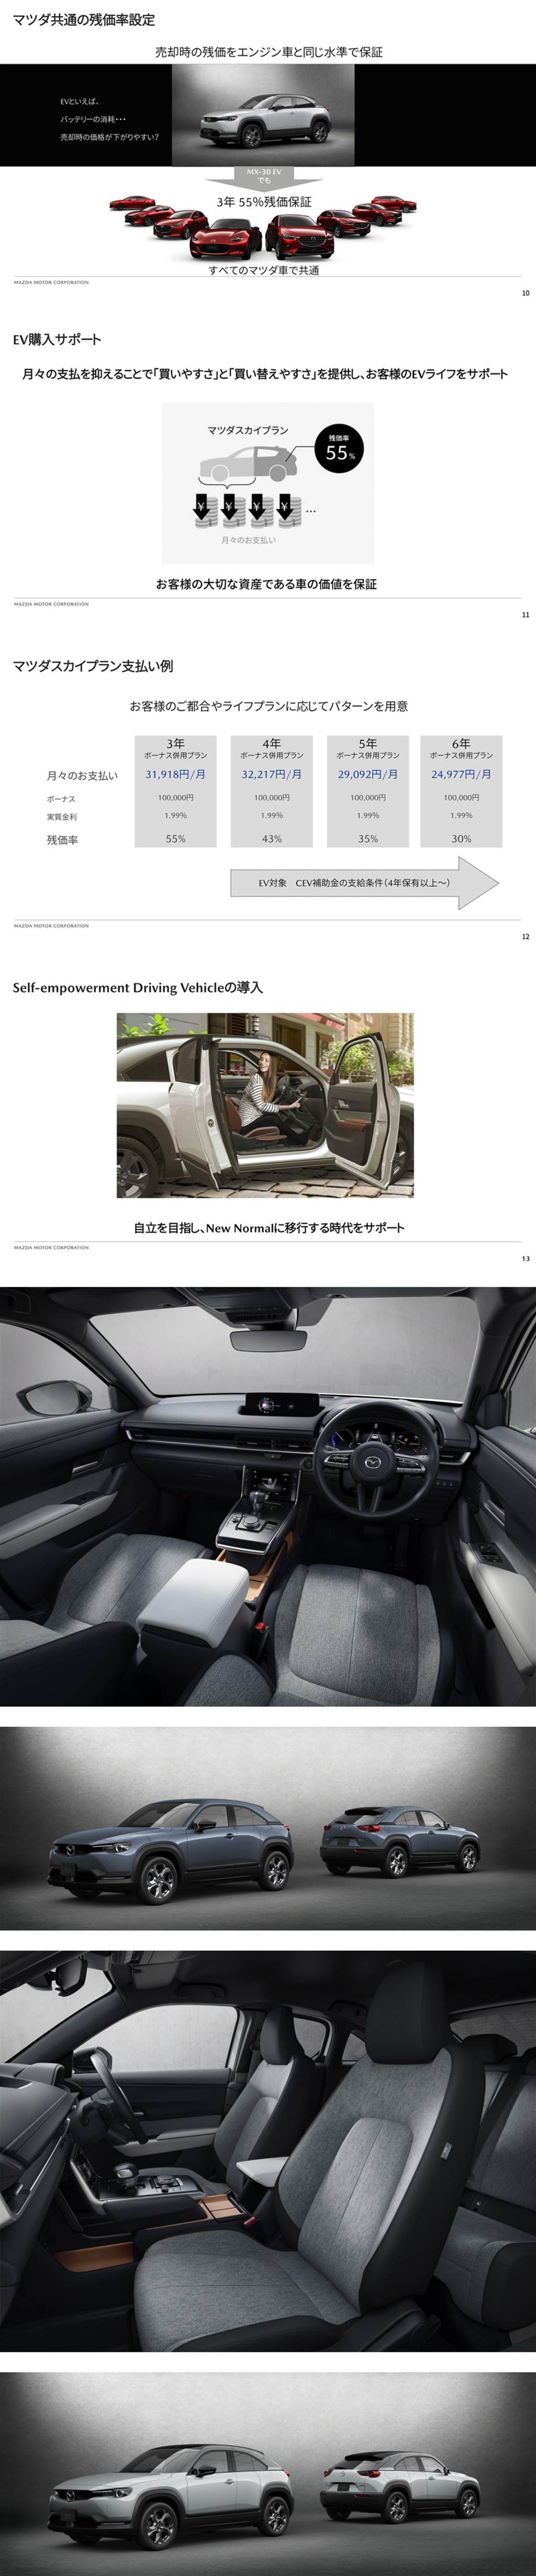 純電續航力 256km，Mazda 首款量產純電車 MX-30 EV MODEL 日本正式販售！
